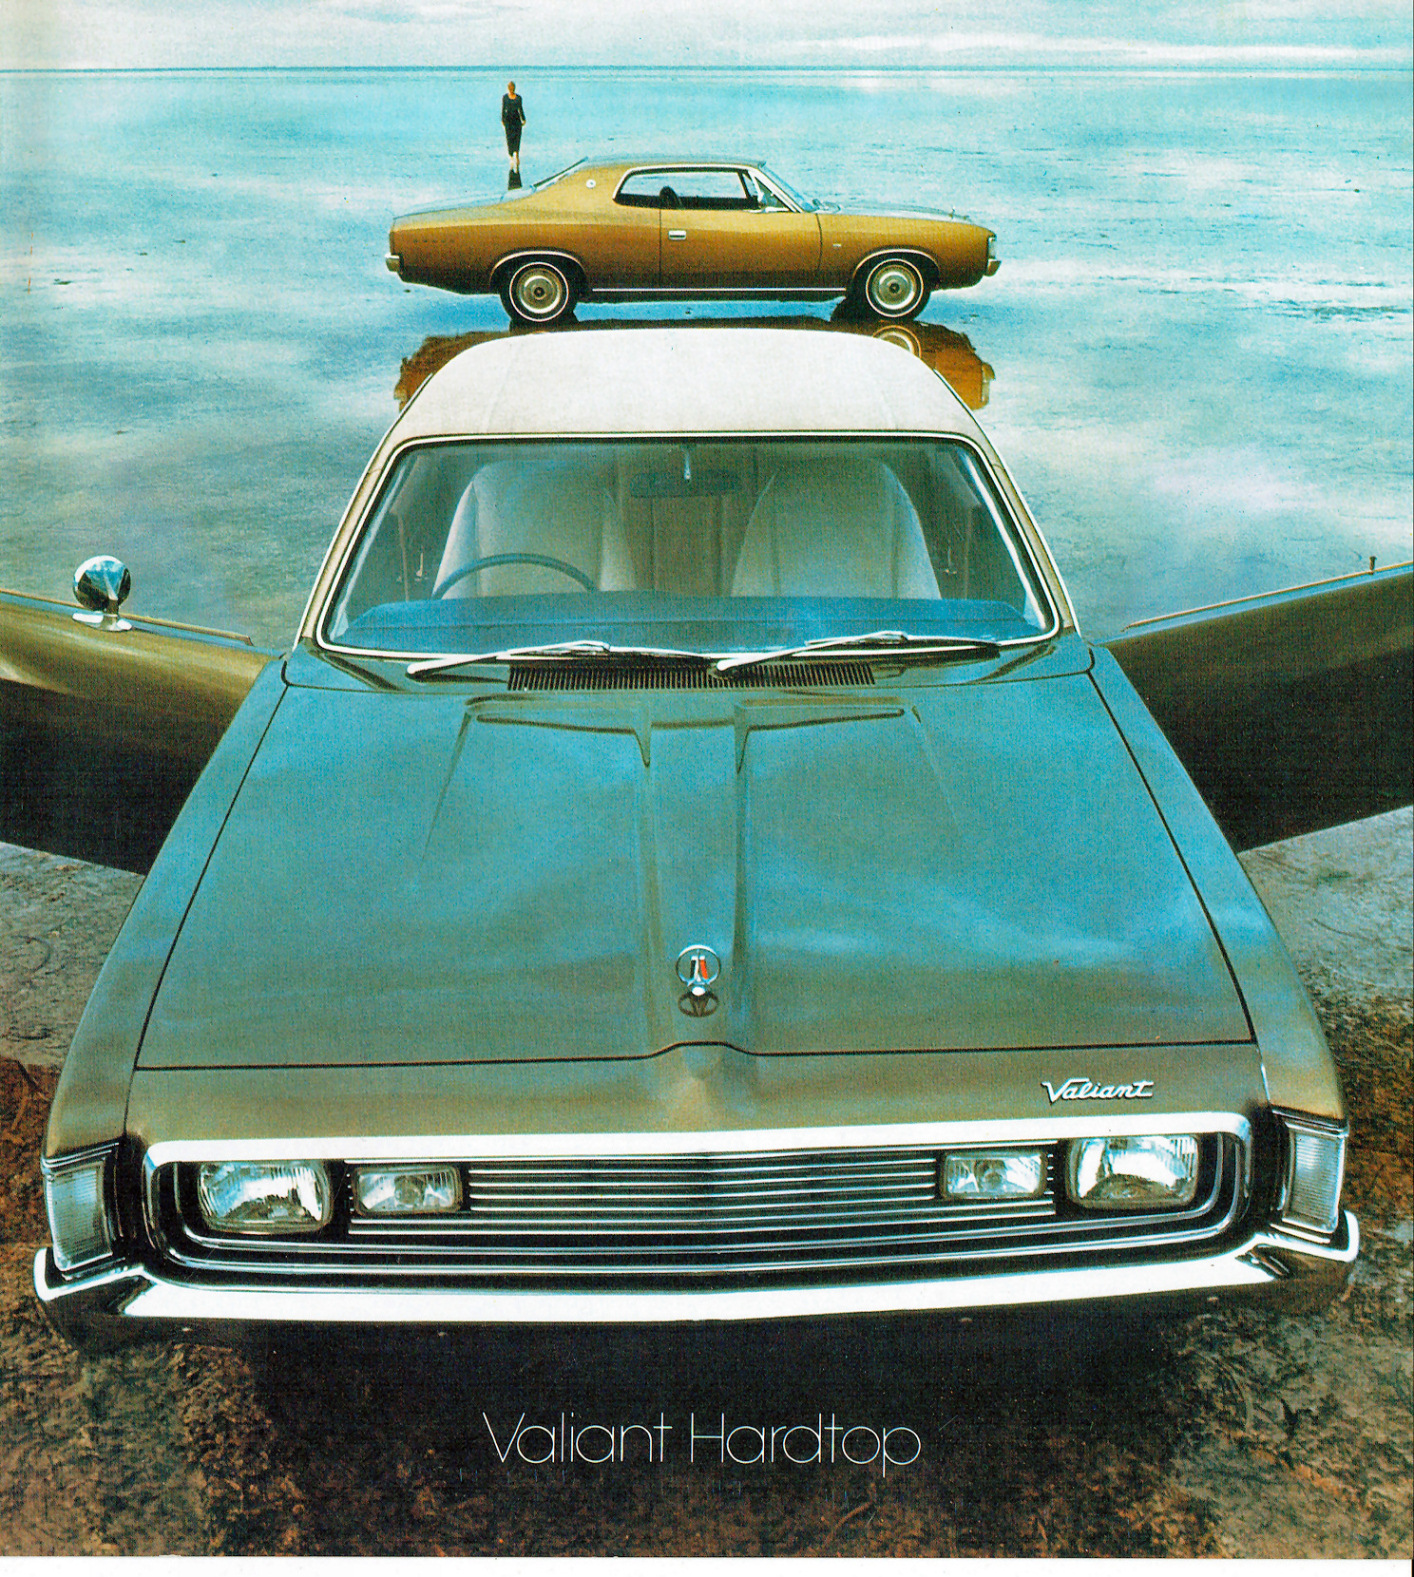 n_1971 Chrysler VH Valiant Hardtop-01.jpg